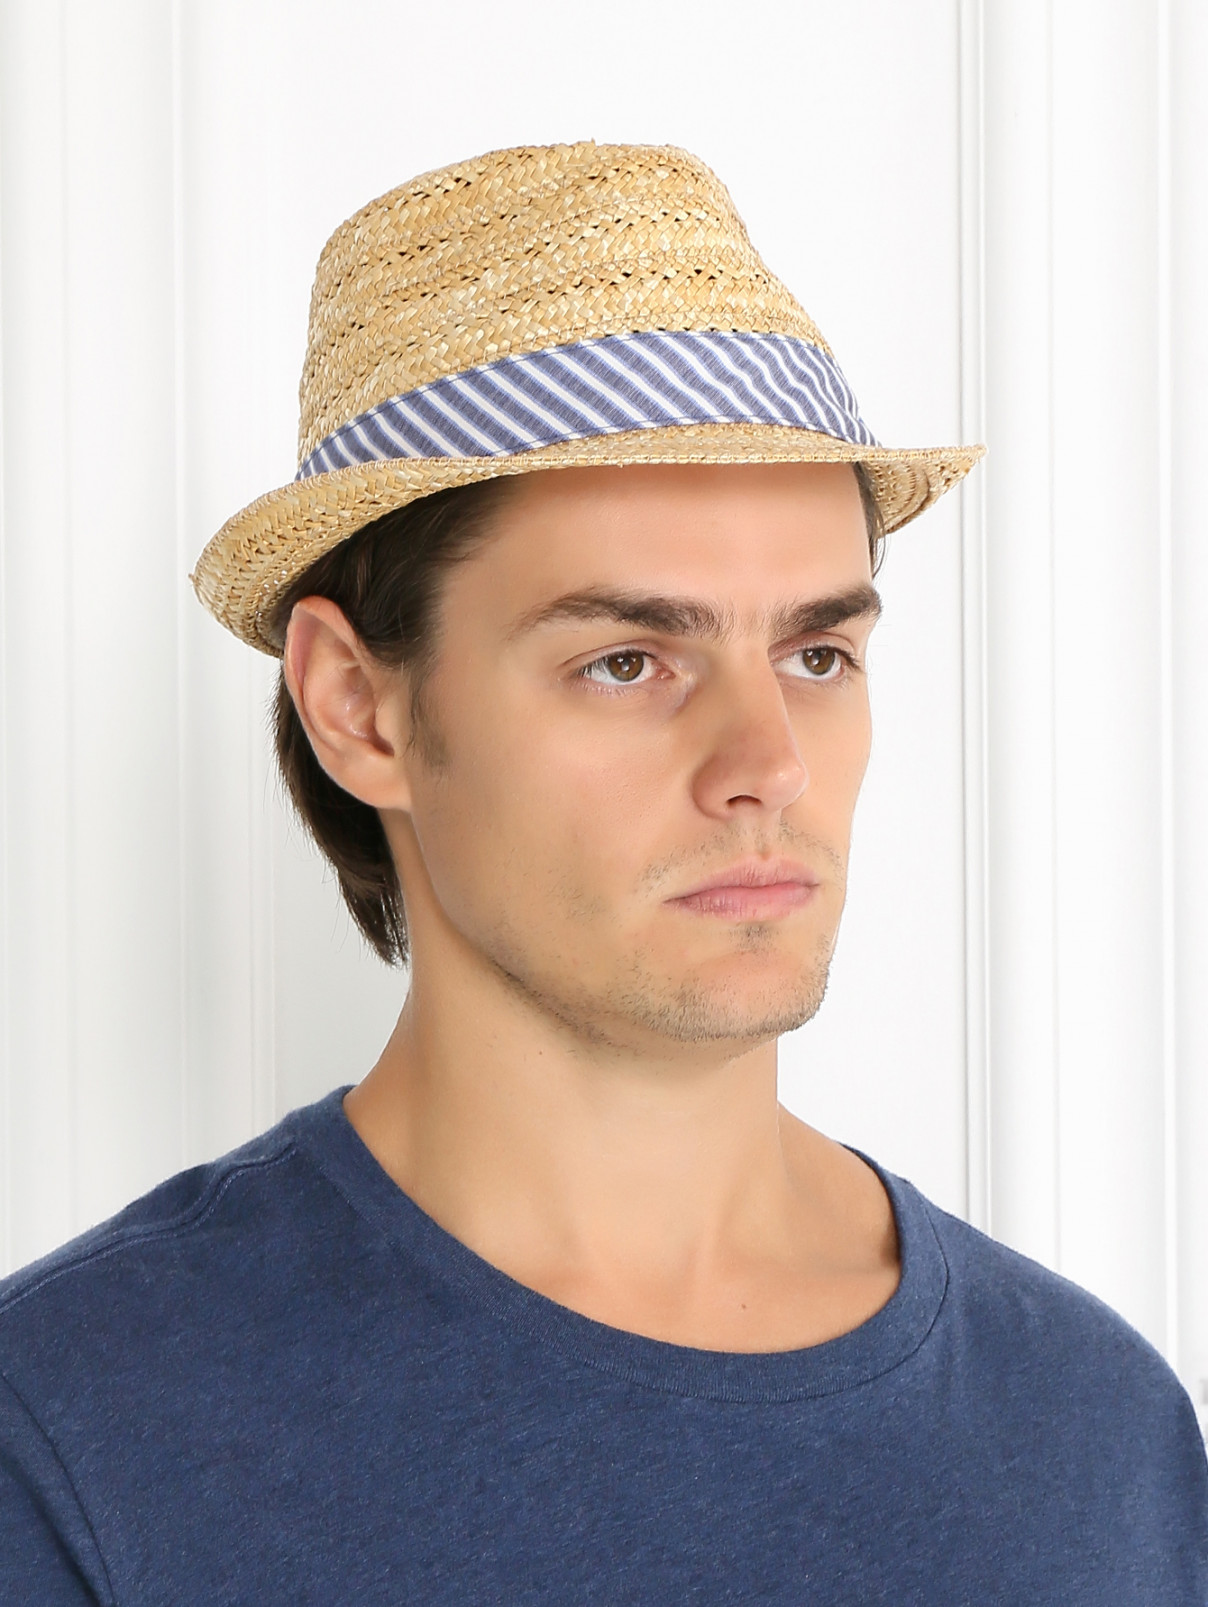 Шляпа соломенная с контрастной вставкой Stetson  –  Модель Общий вид  – Цвет:  Желтый